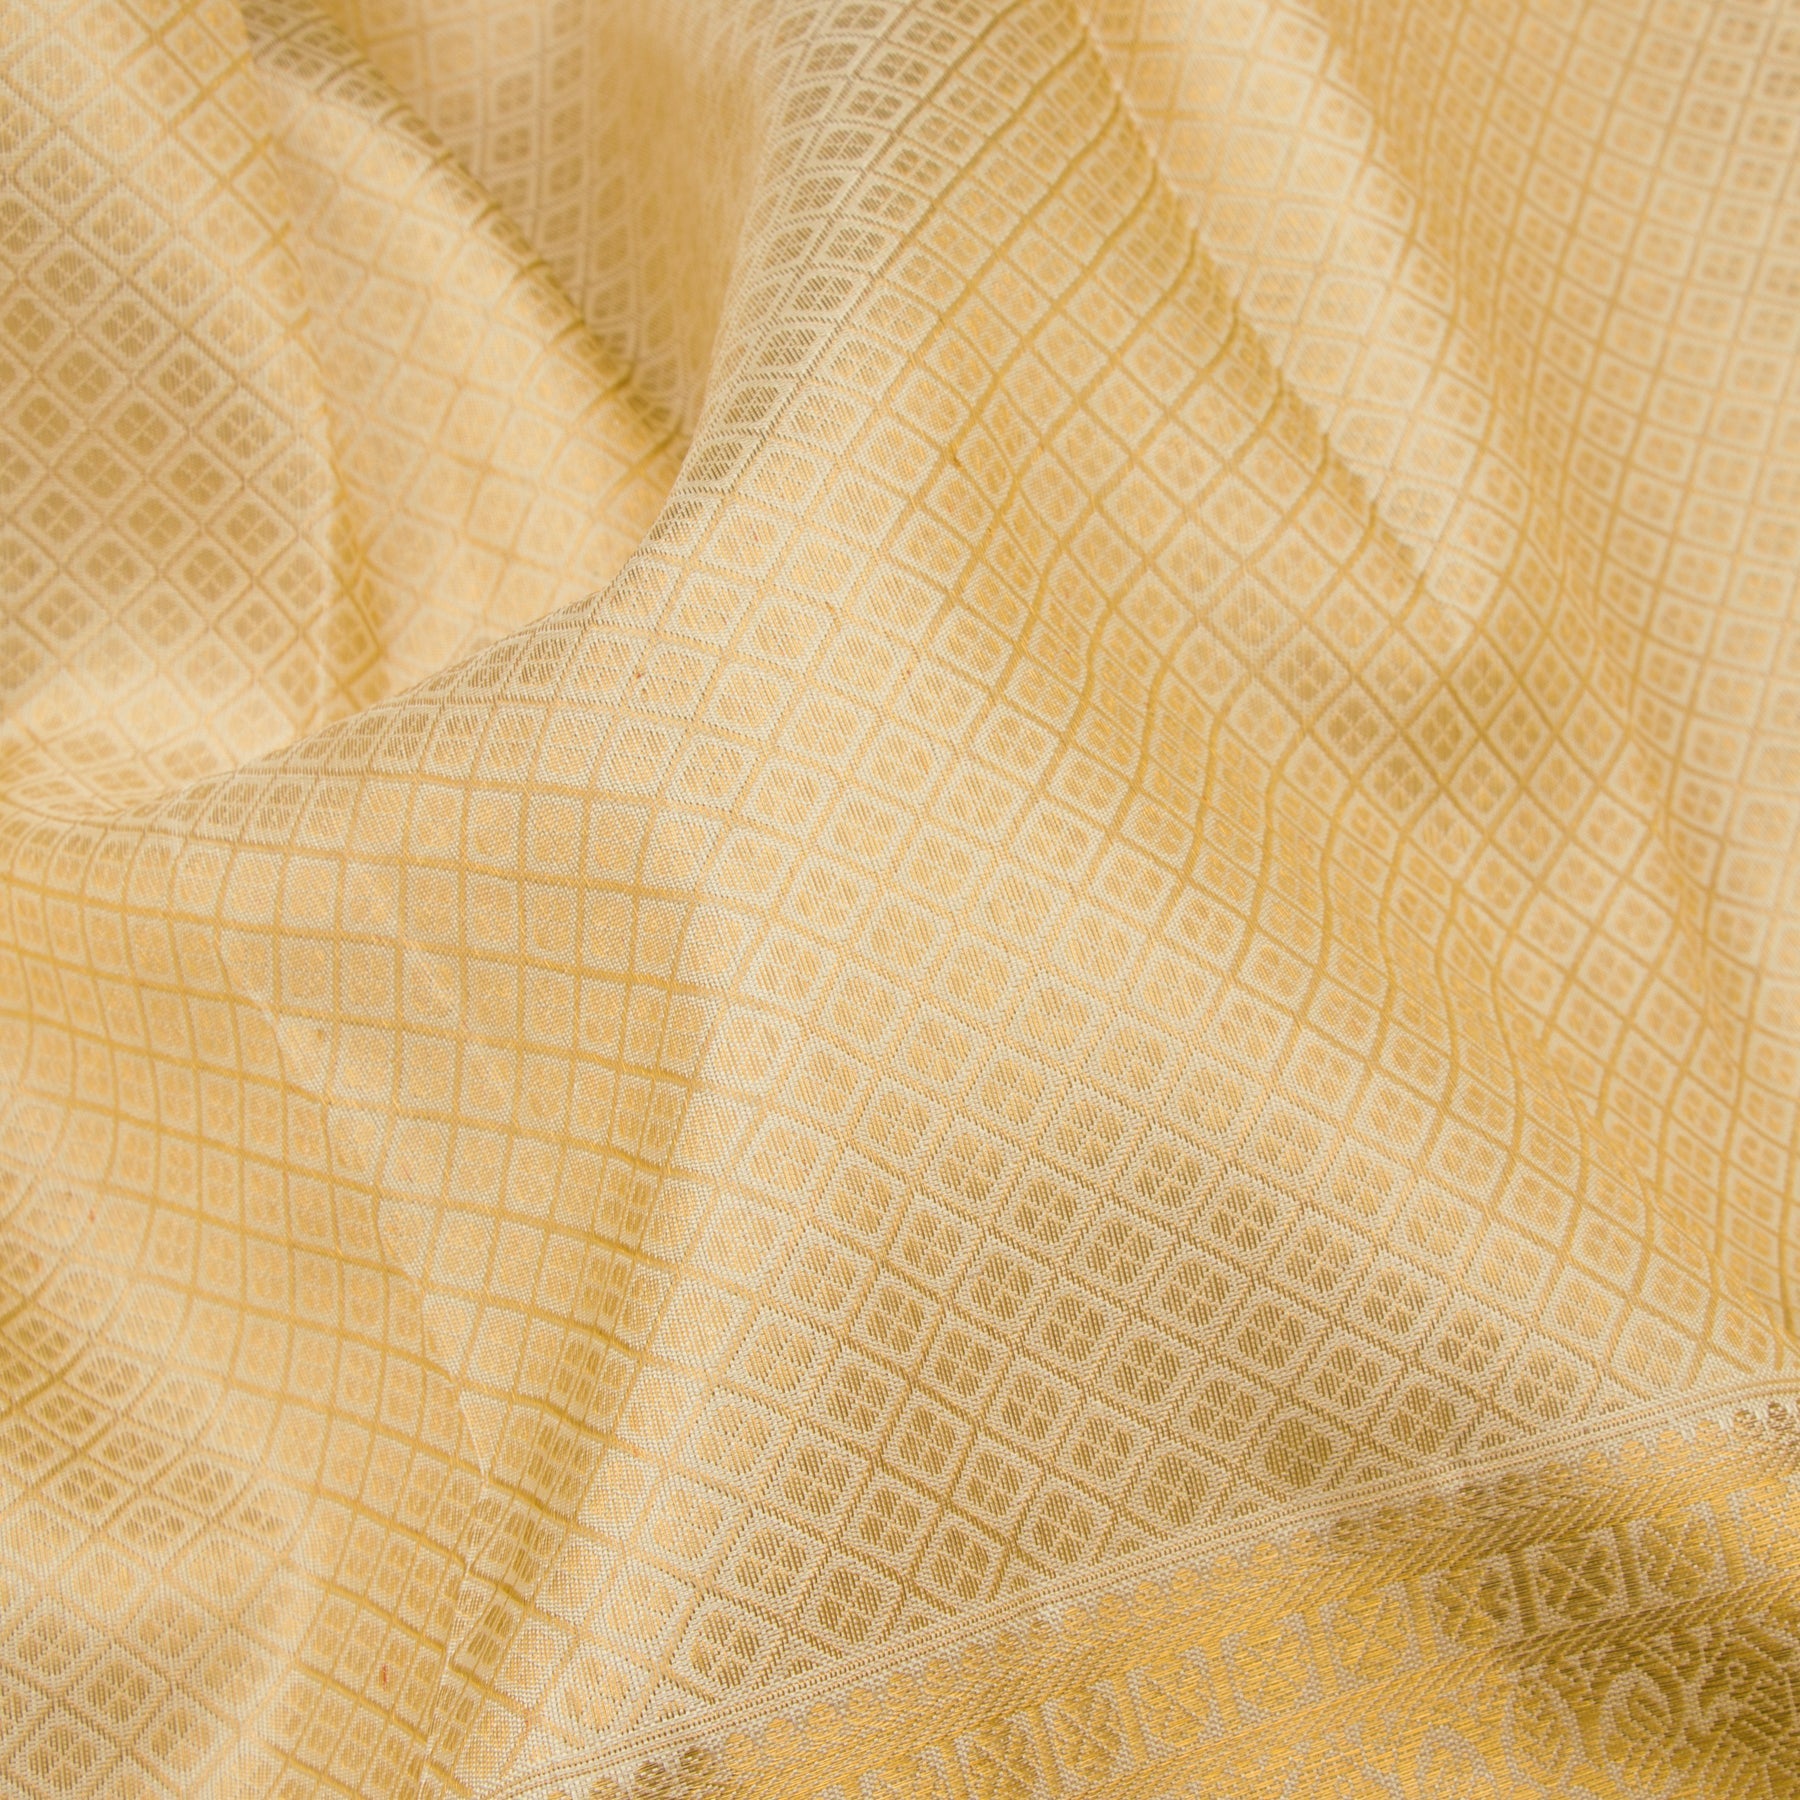 Kanakavalli Kanjivaram Silk Sari 23-110-HS001-02410 - Fabric View